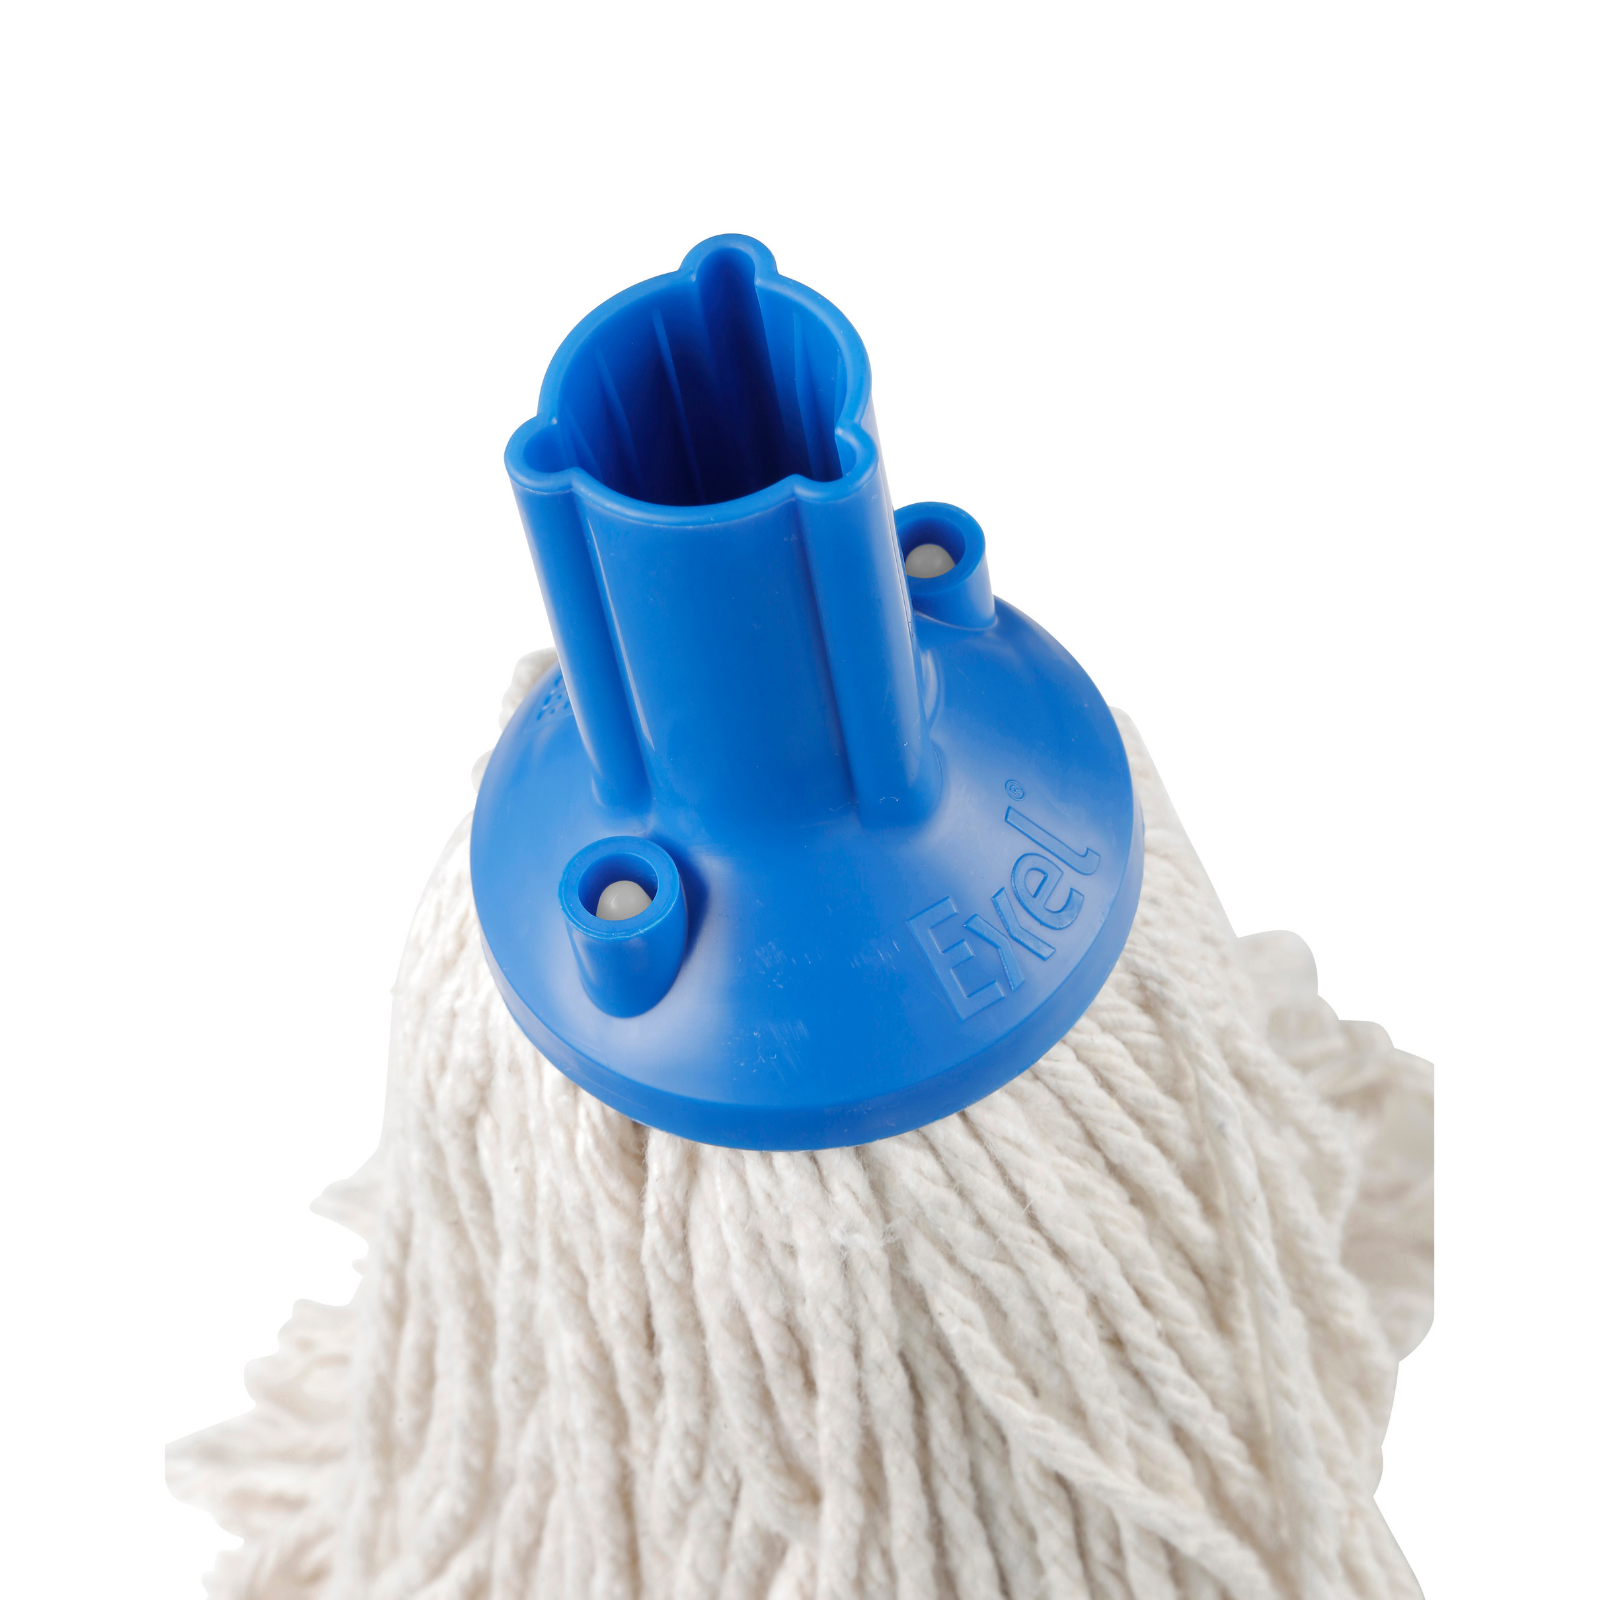 Exel 200g PY Yarn Socket Mops - Blue